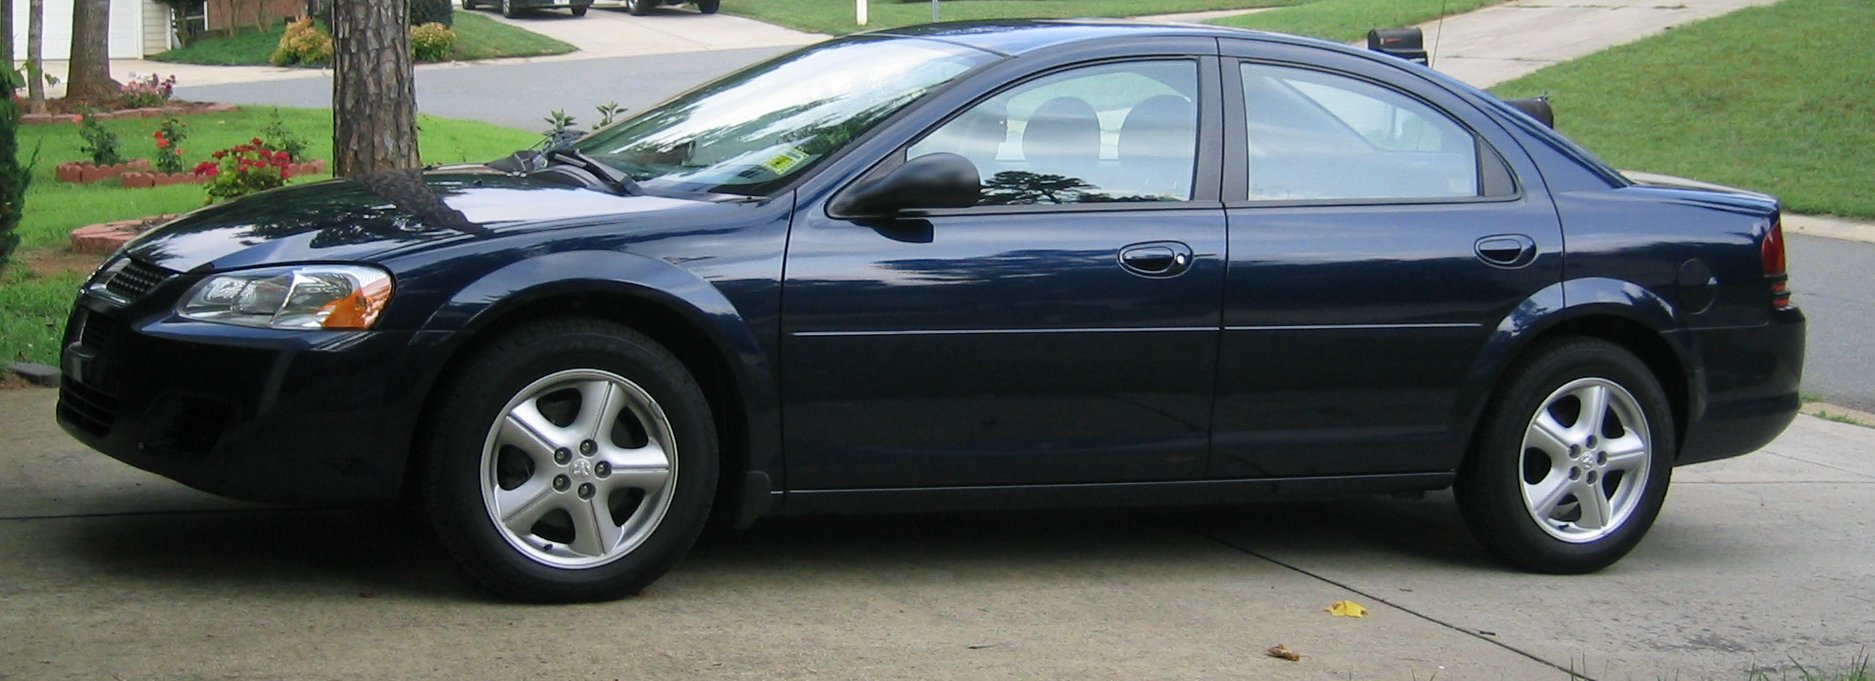 Dodge Stratus 2005 #1